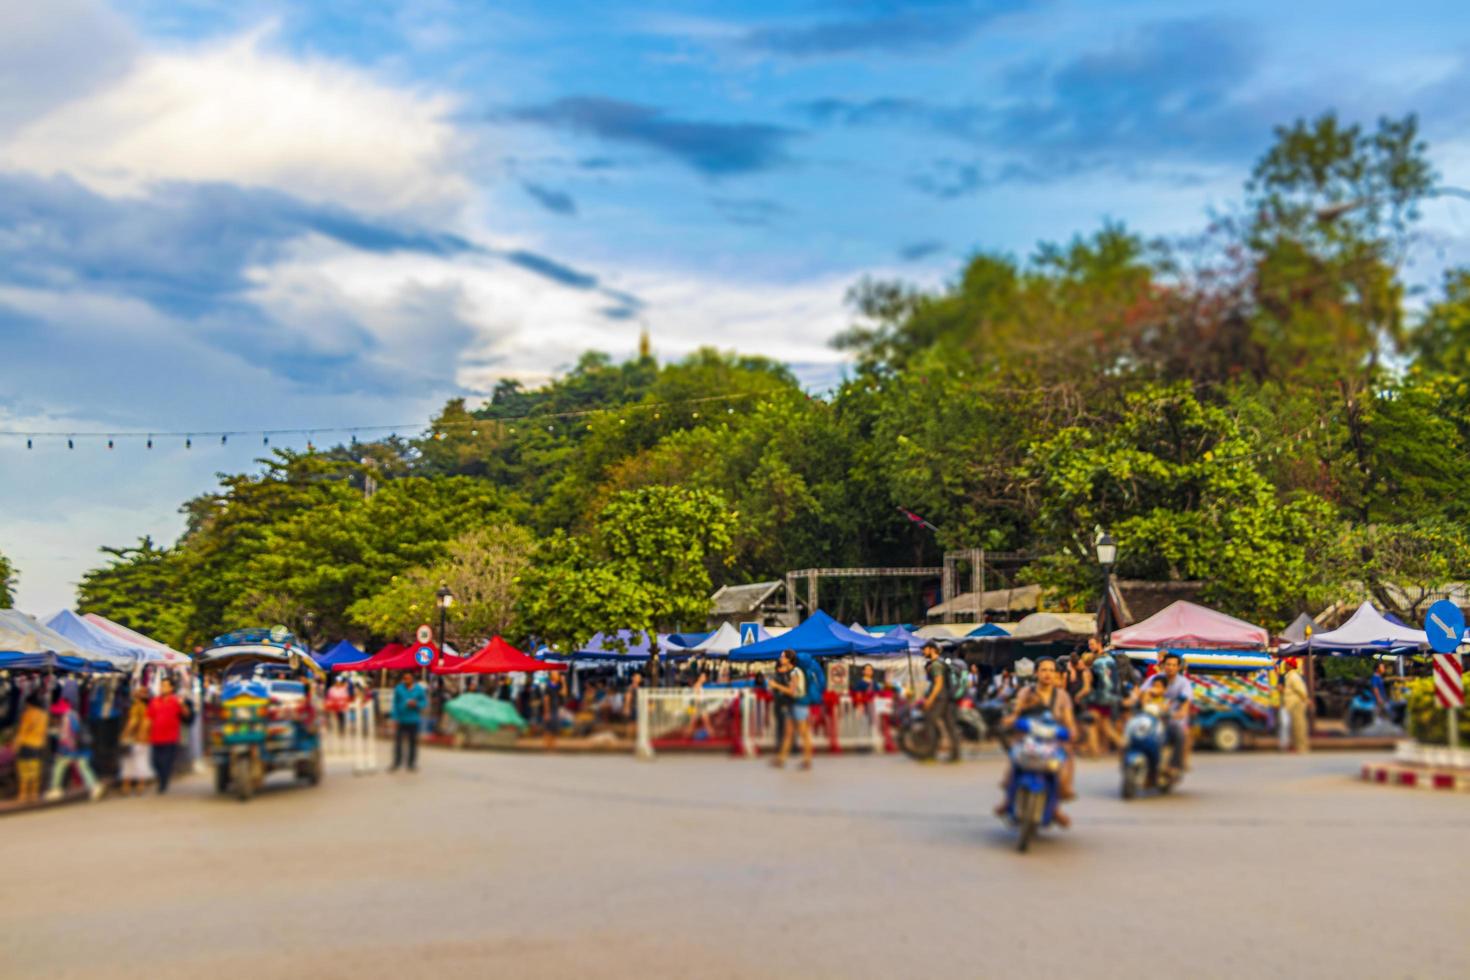 luang prabang, laos 2018 - estrada colorida típica e paisagem urbana da cidade velha de luang prabang, laos foto